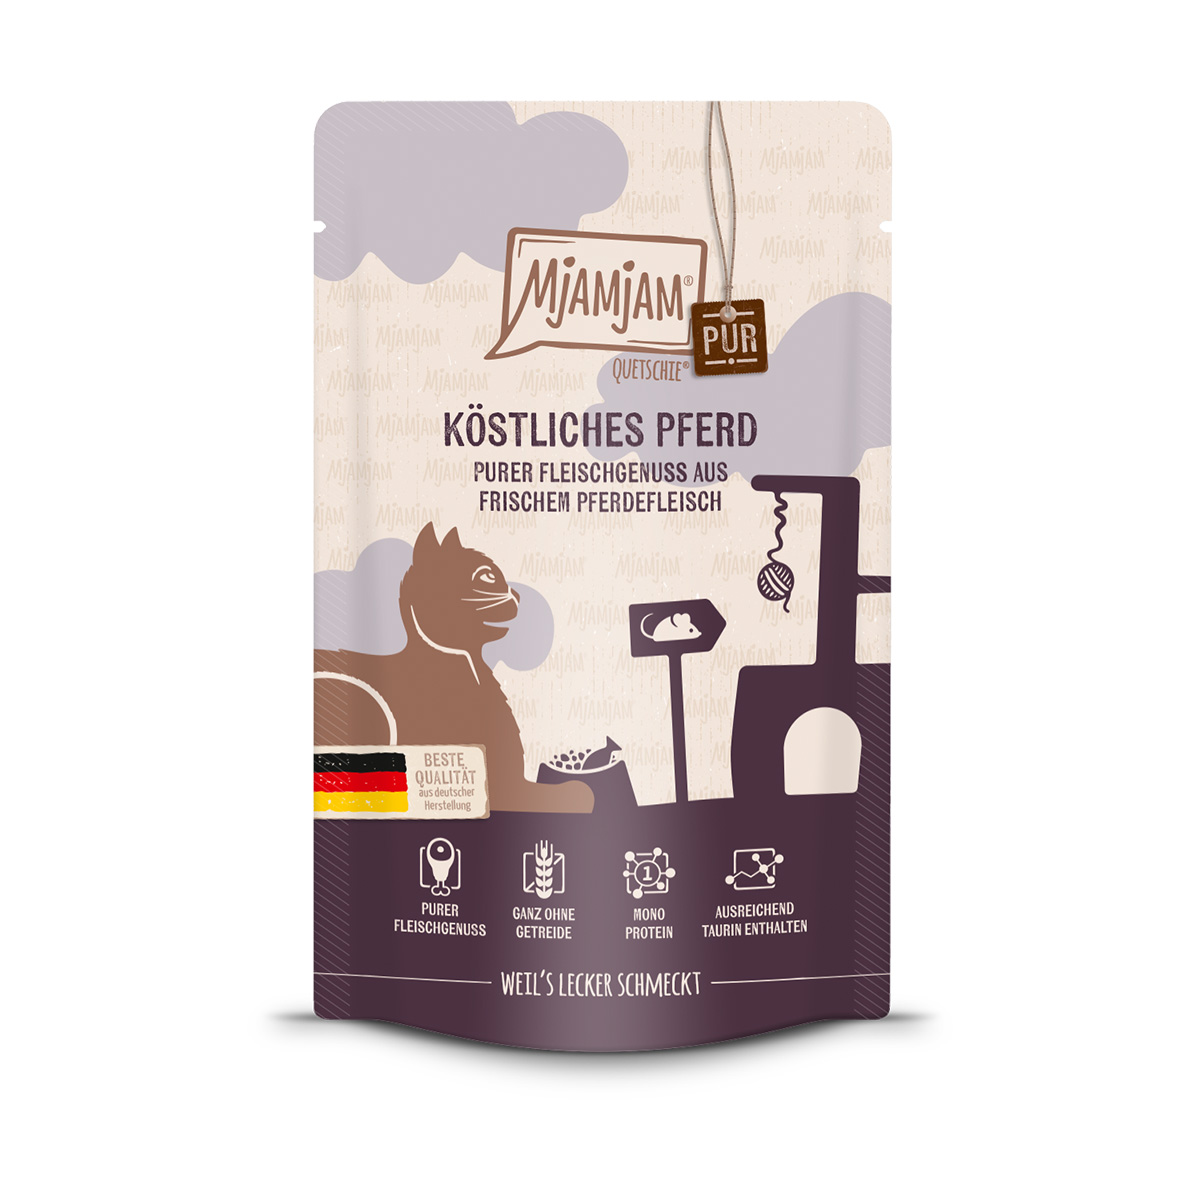 MjAMjAM – Quetschie – purer Fleischgenuss – köstliches Pferd pur 48x125g